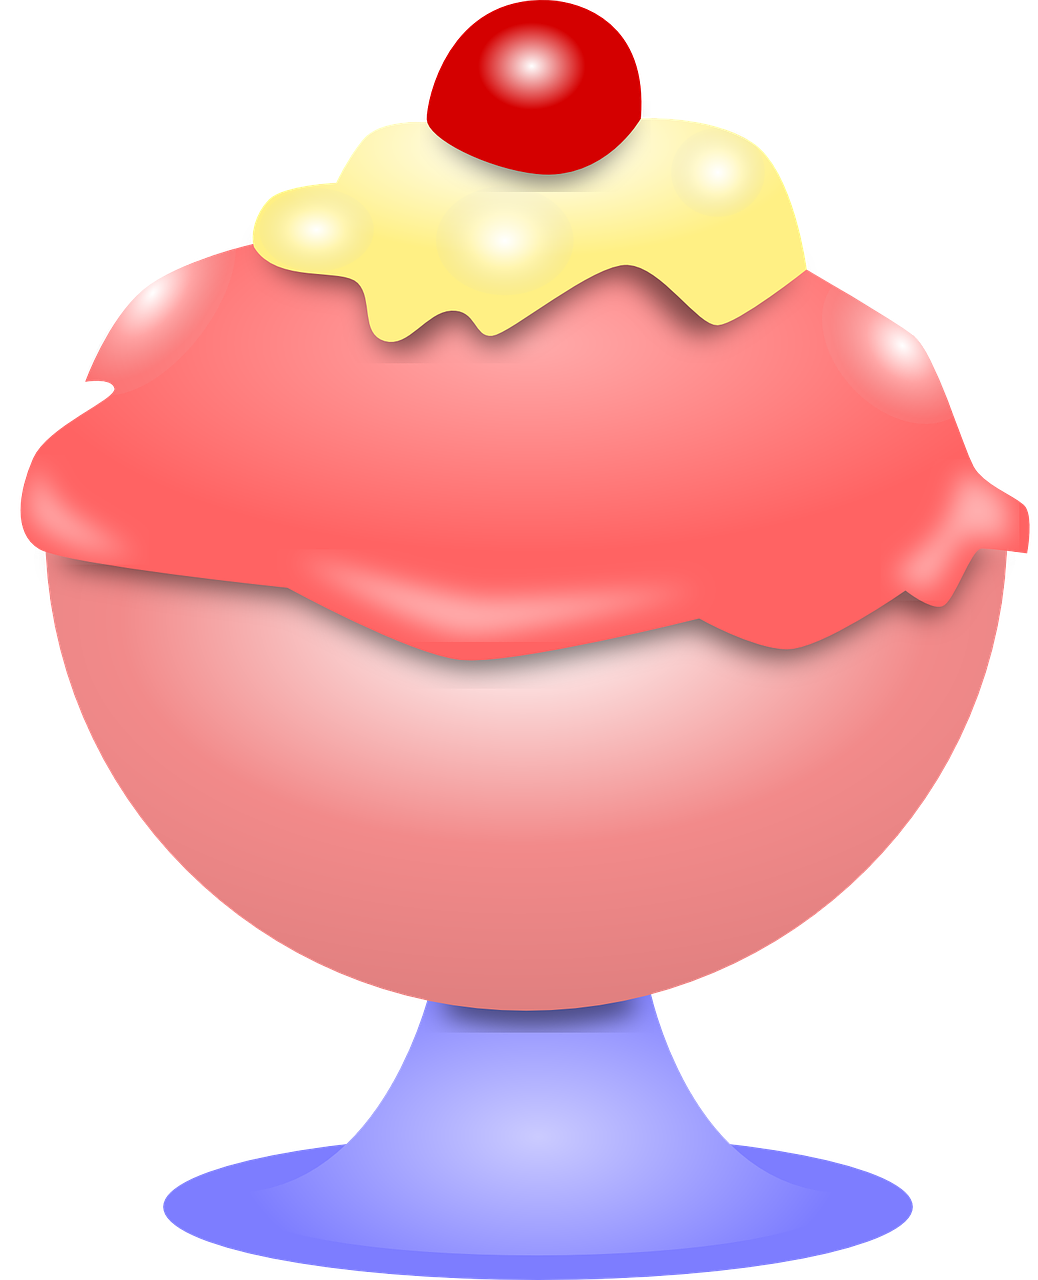 sundae ice cream cream free photo